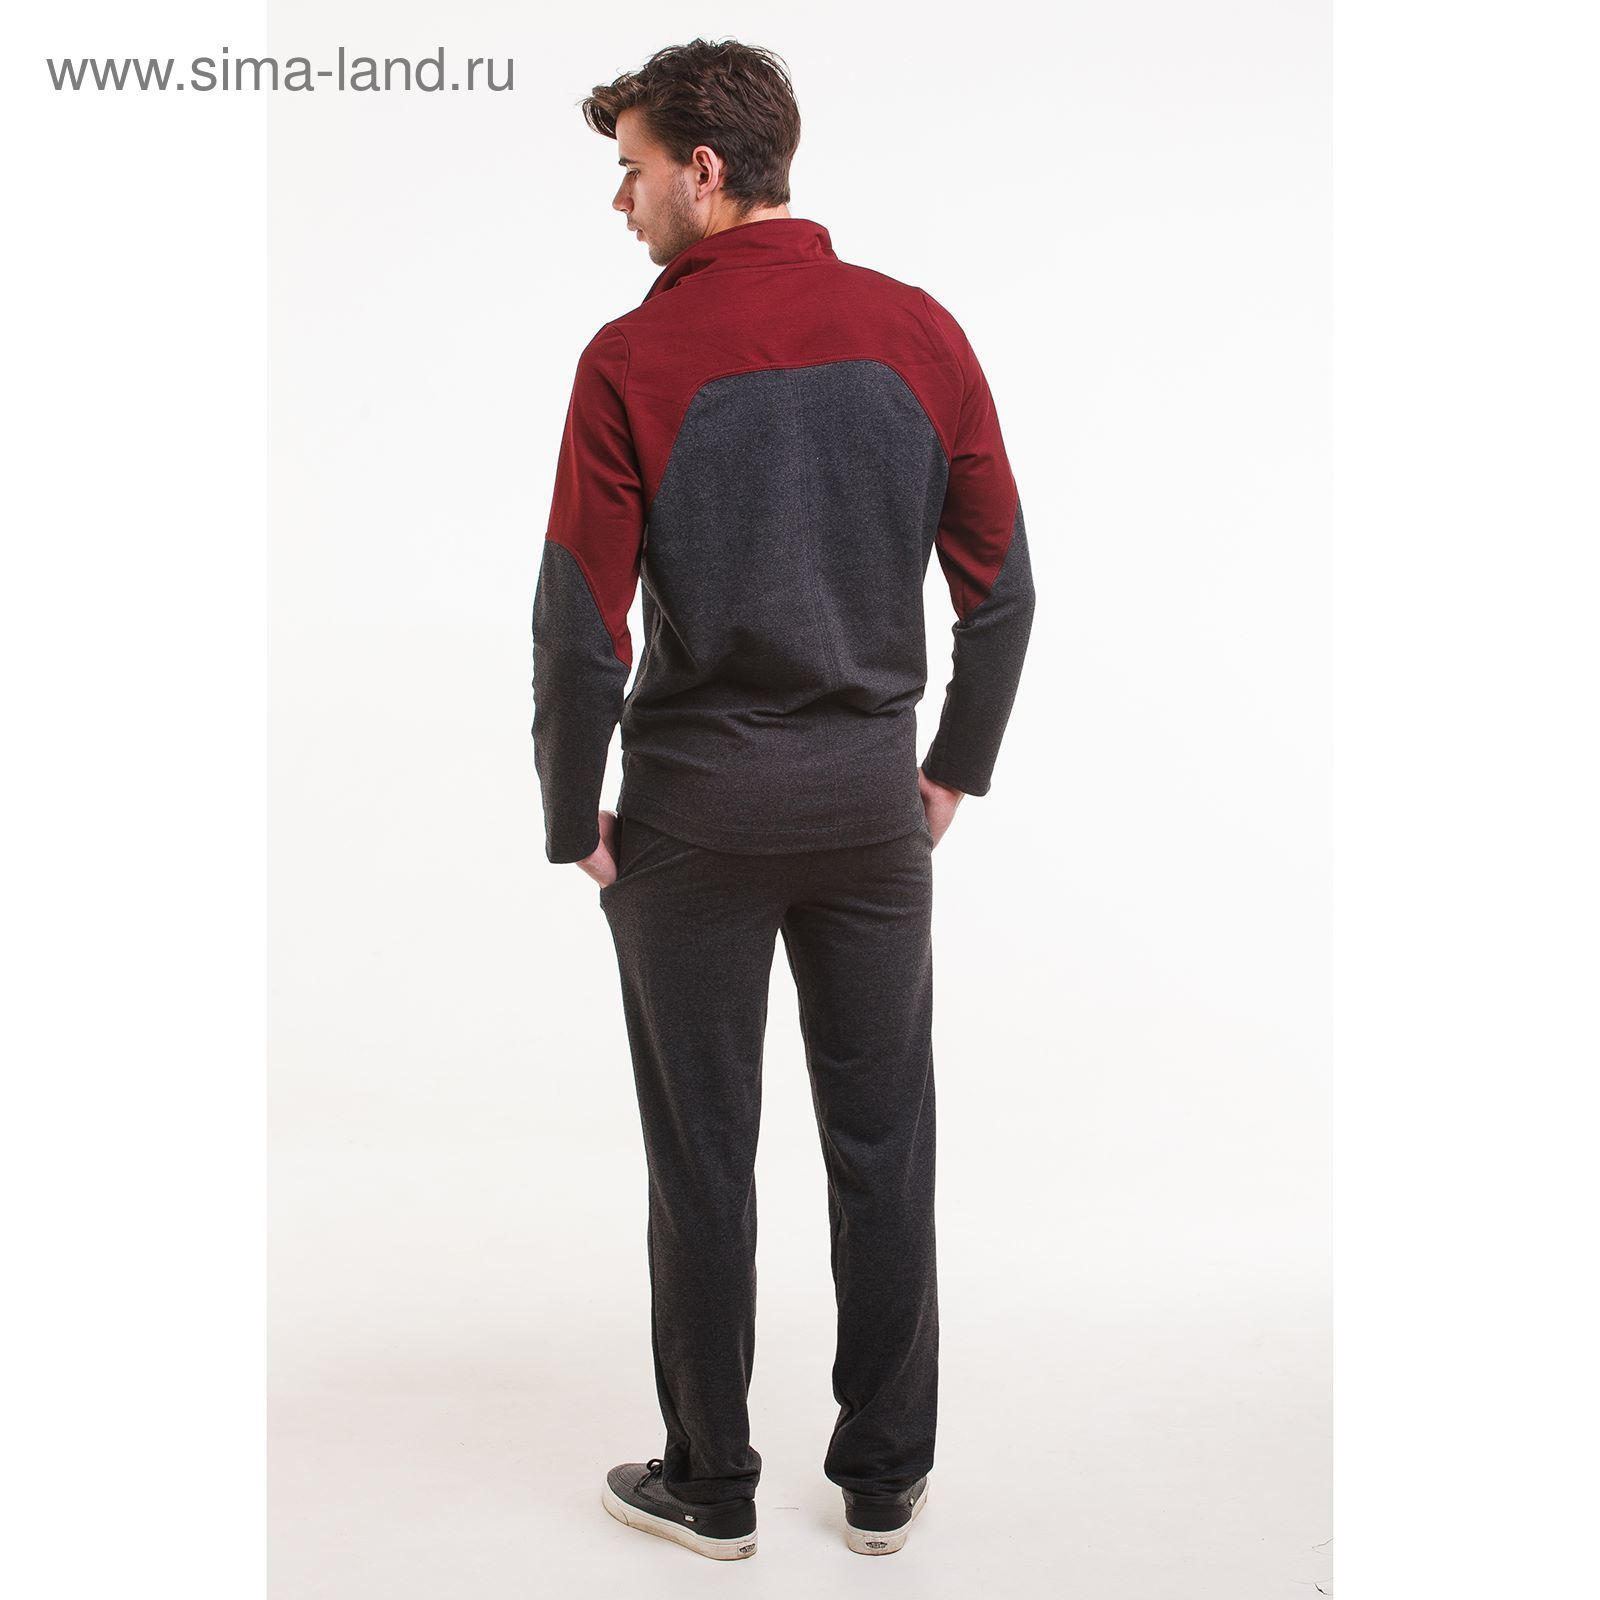 Комплект мужской (фуфайка, брюки) цвет бордовый, р-р 48